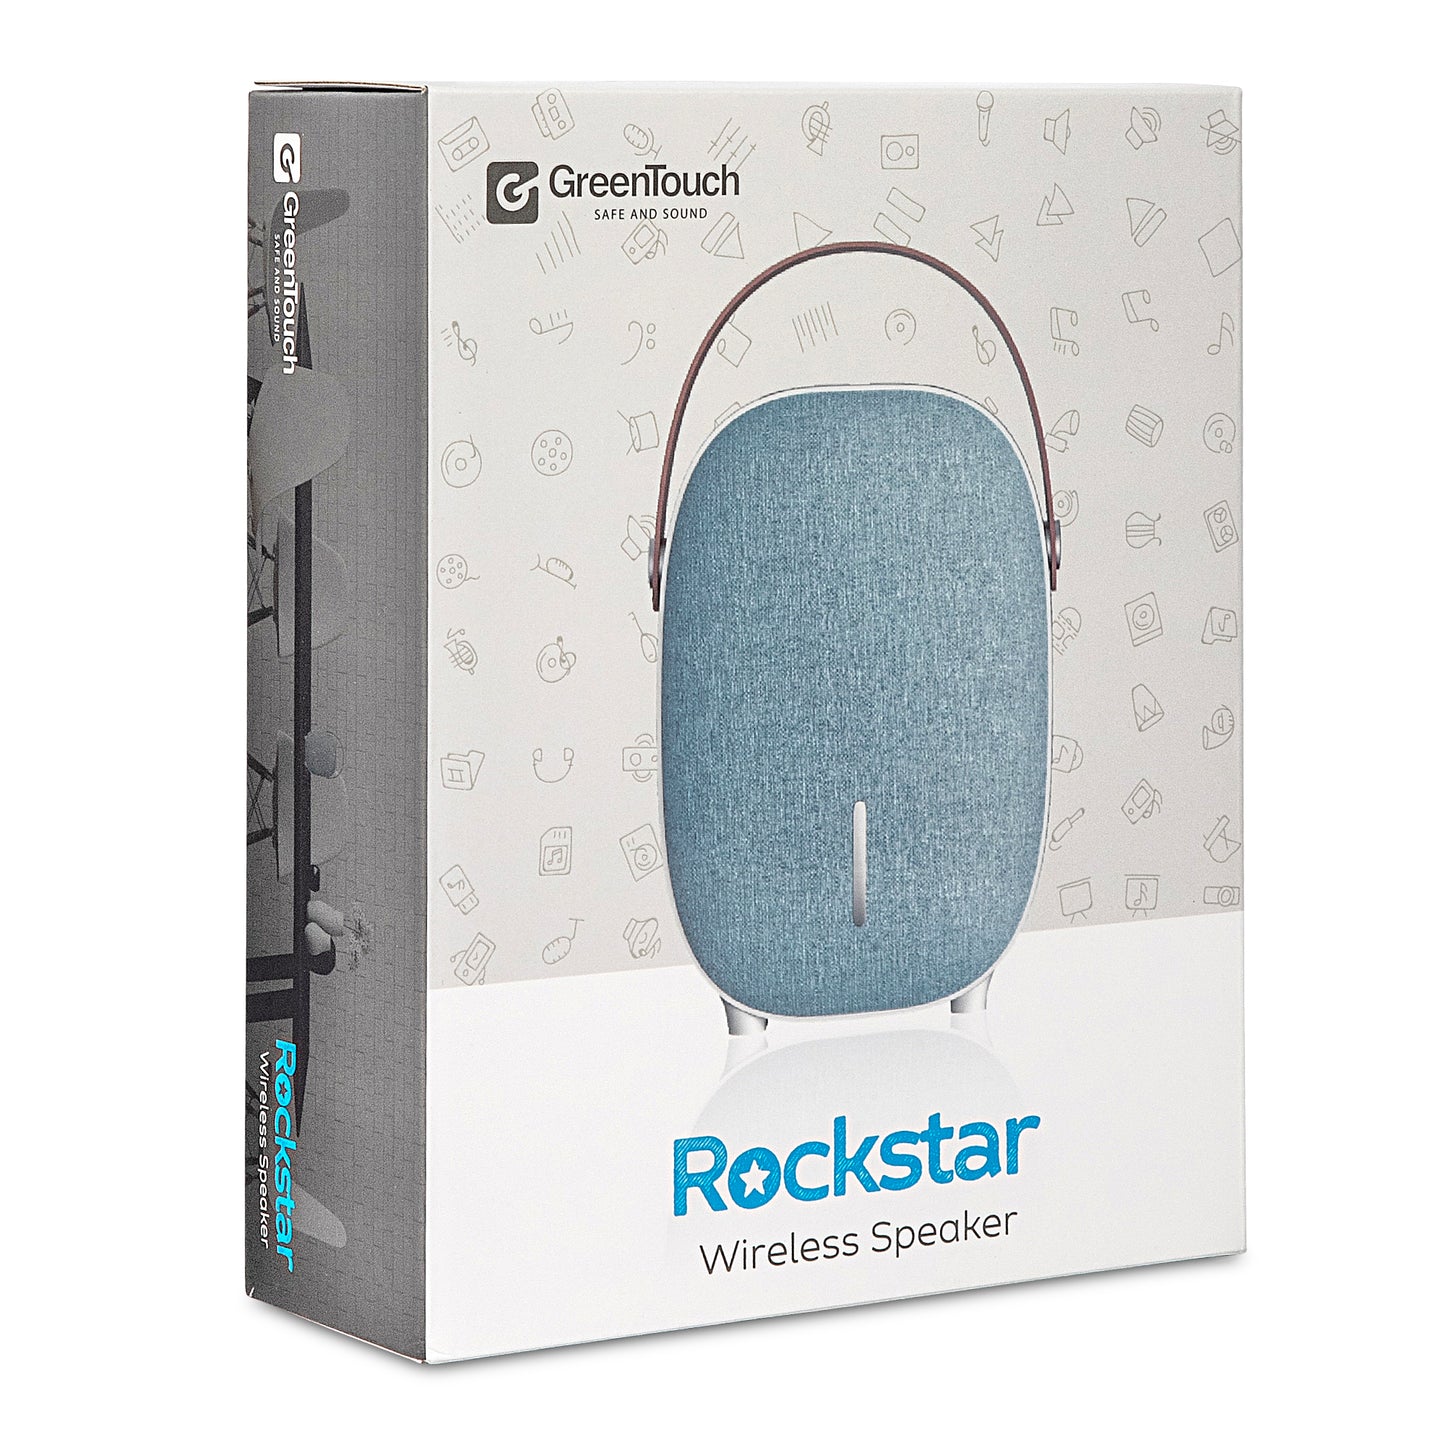 Greentouch Rockstar Bluetooth Speaker